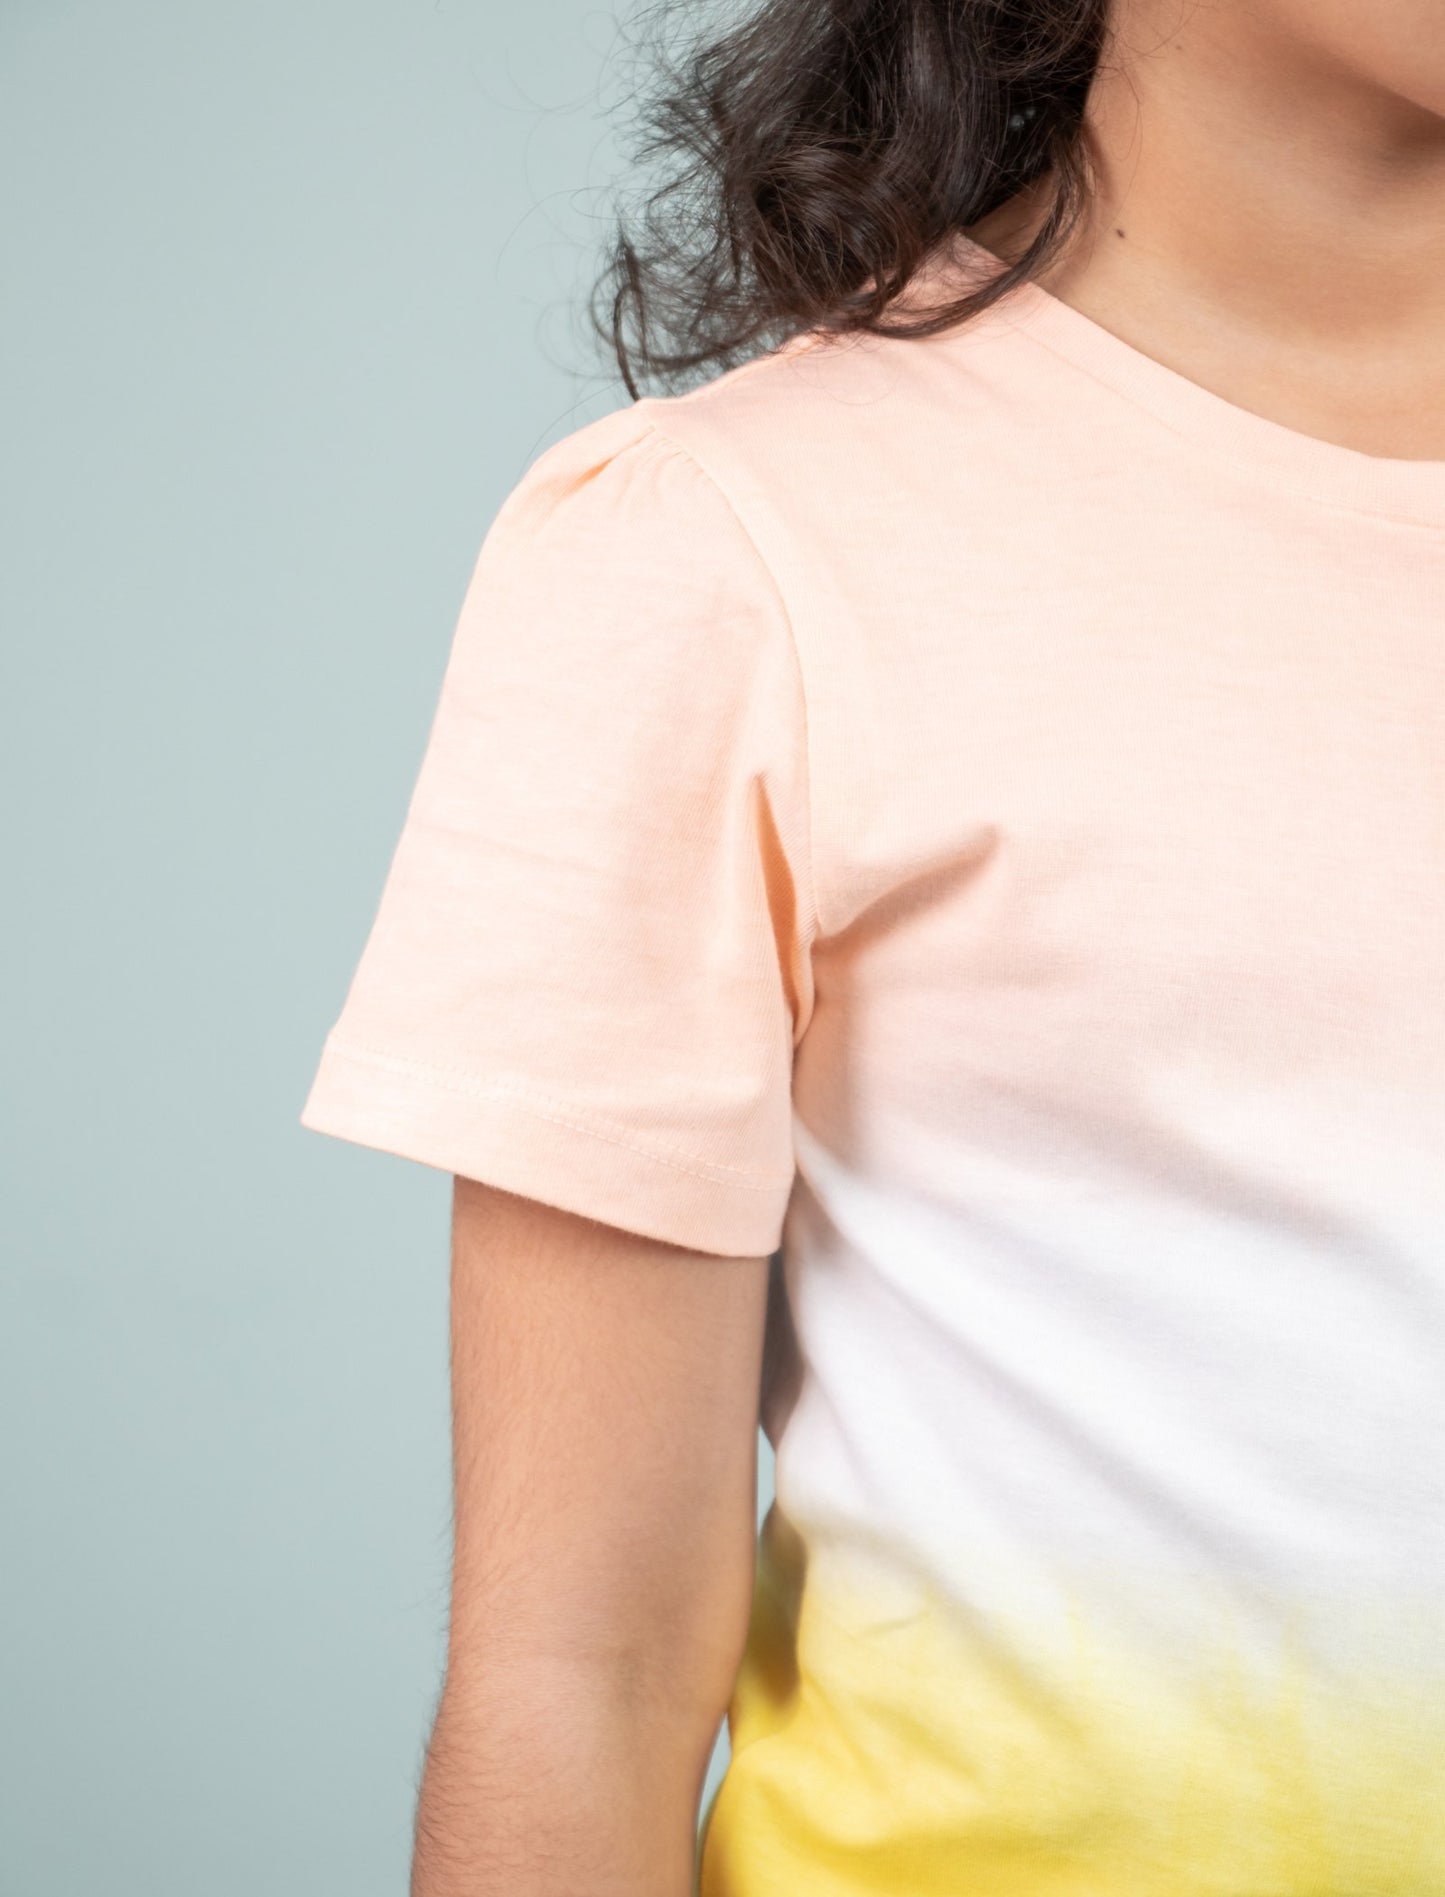 Girls Kids Ombre Pattern Tie-Dye Pure Cotton Sleepwear (Yellow - Peach)